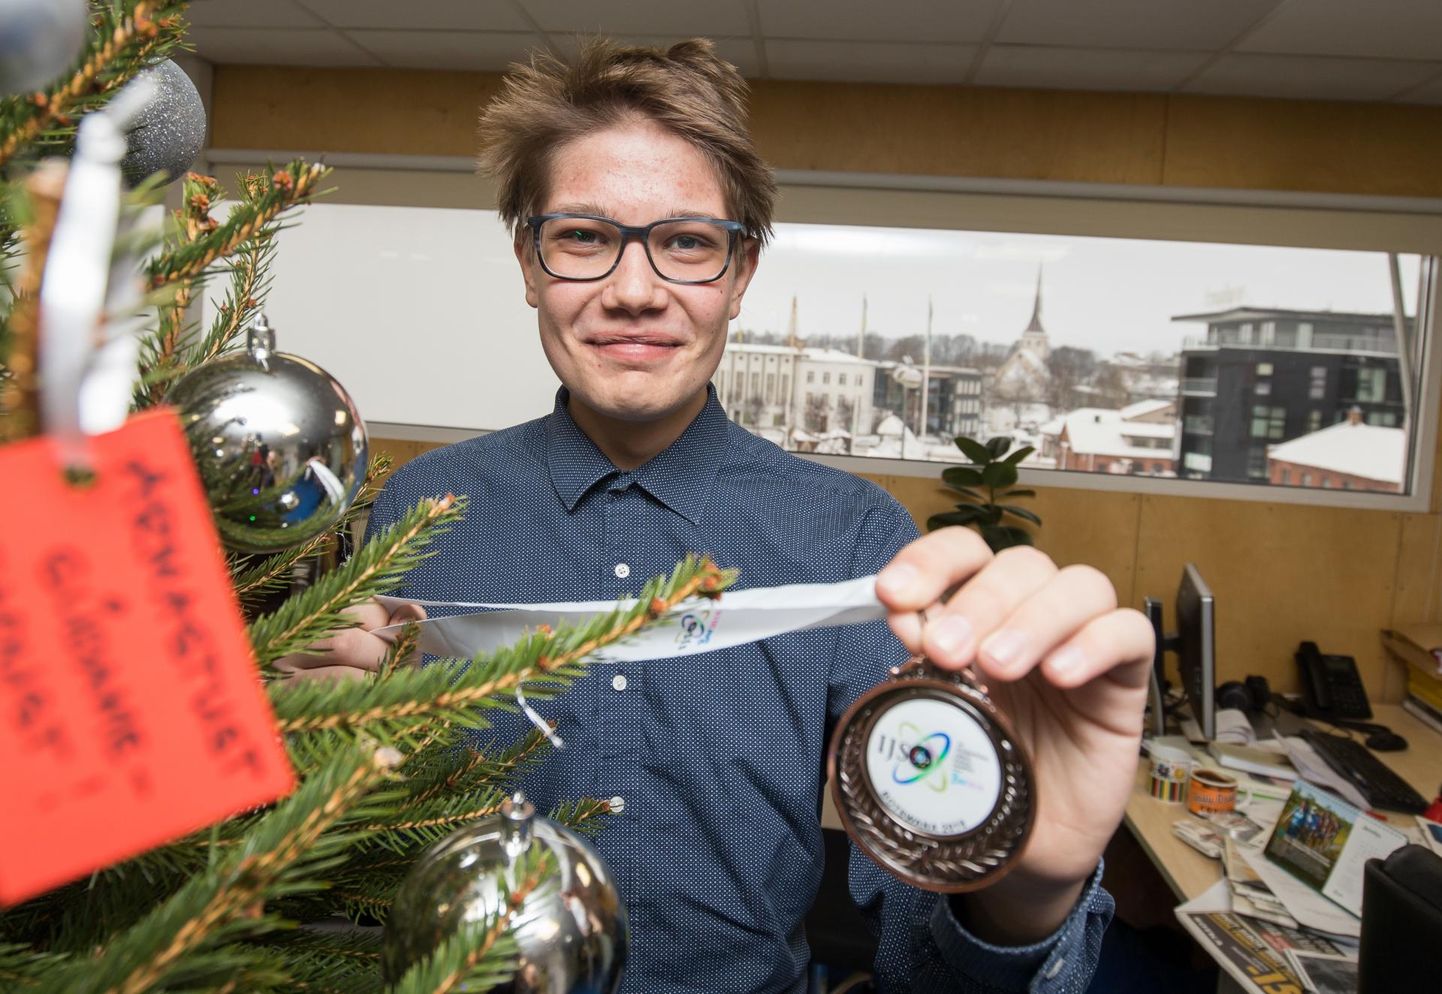 Rakvere gümnaasiumi põhikooli lõpuklassi noormees Kristjan Tropp naasis rahvusvaheliselt loodusteaduste olümpiaadilt pronksmedaliga.